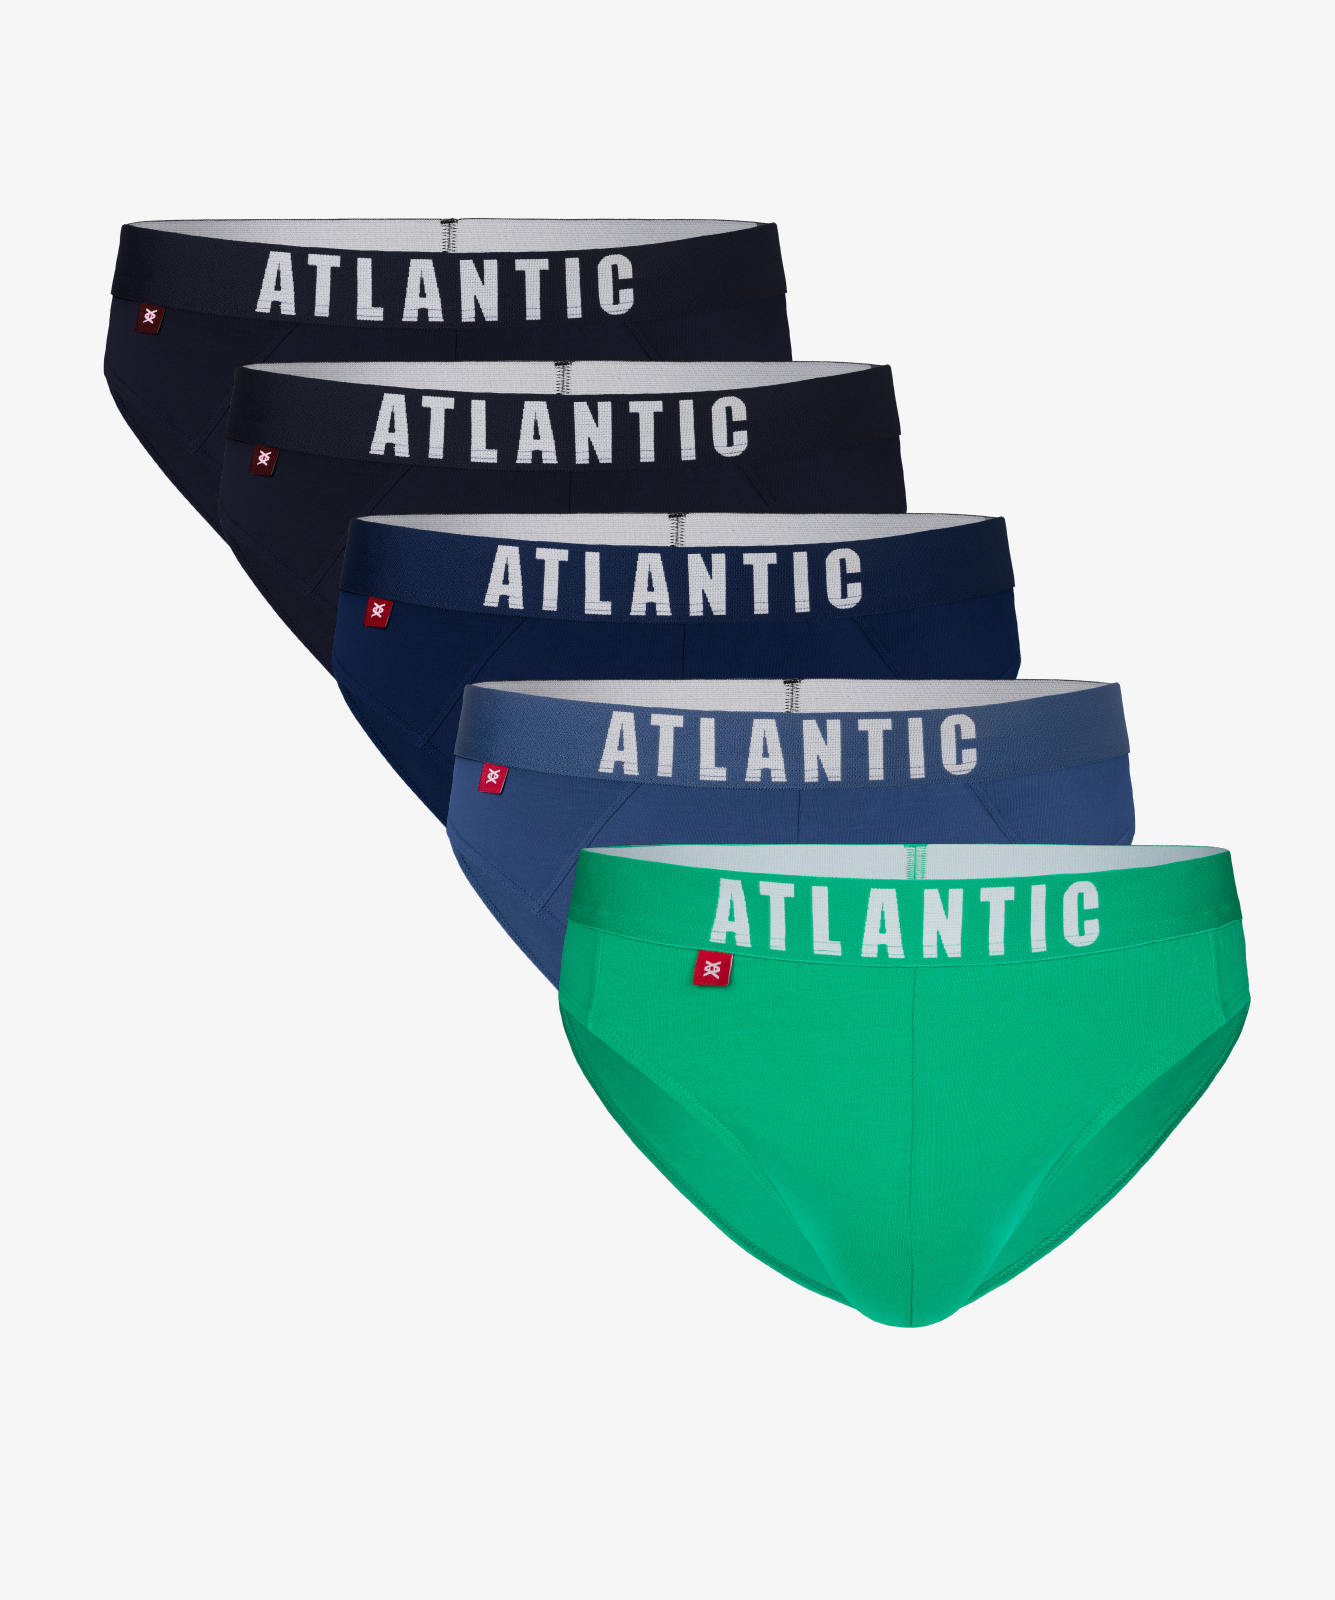 Мужские трусы слипы спорт Atlantic, набор 5 шт., хлопок, темно-синие + серо-голубые + зеленые + темно-голубые, 5SMP-004